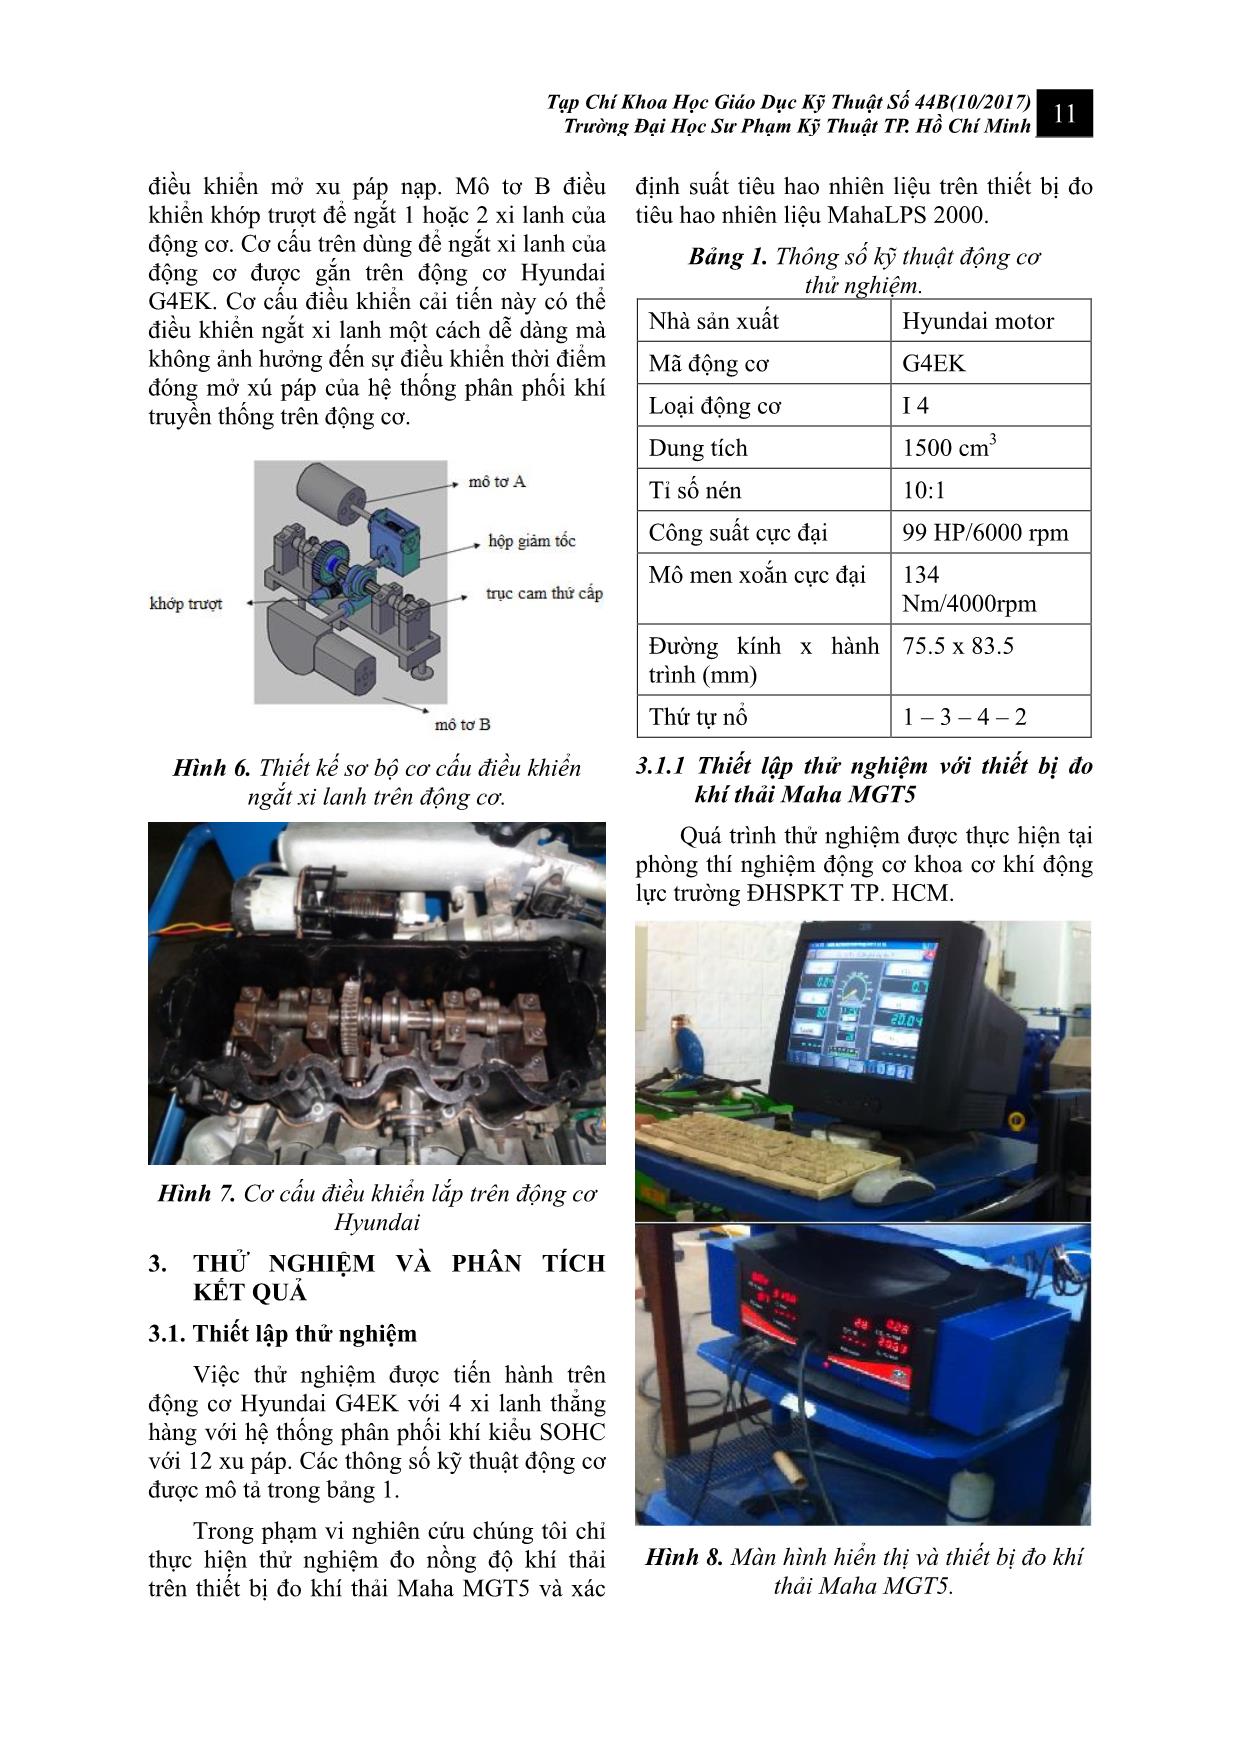 Đề xuất thiết kế thử nghiệm hệ thống điều khiển ngắt xi lanh trên động cơ xăng trang 5